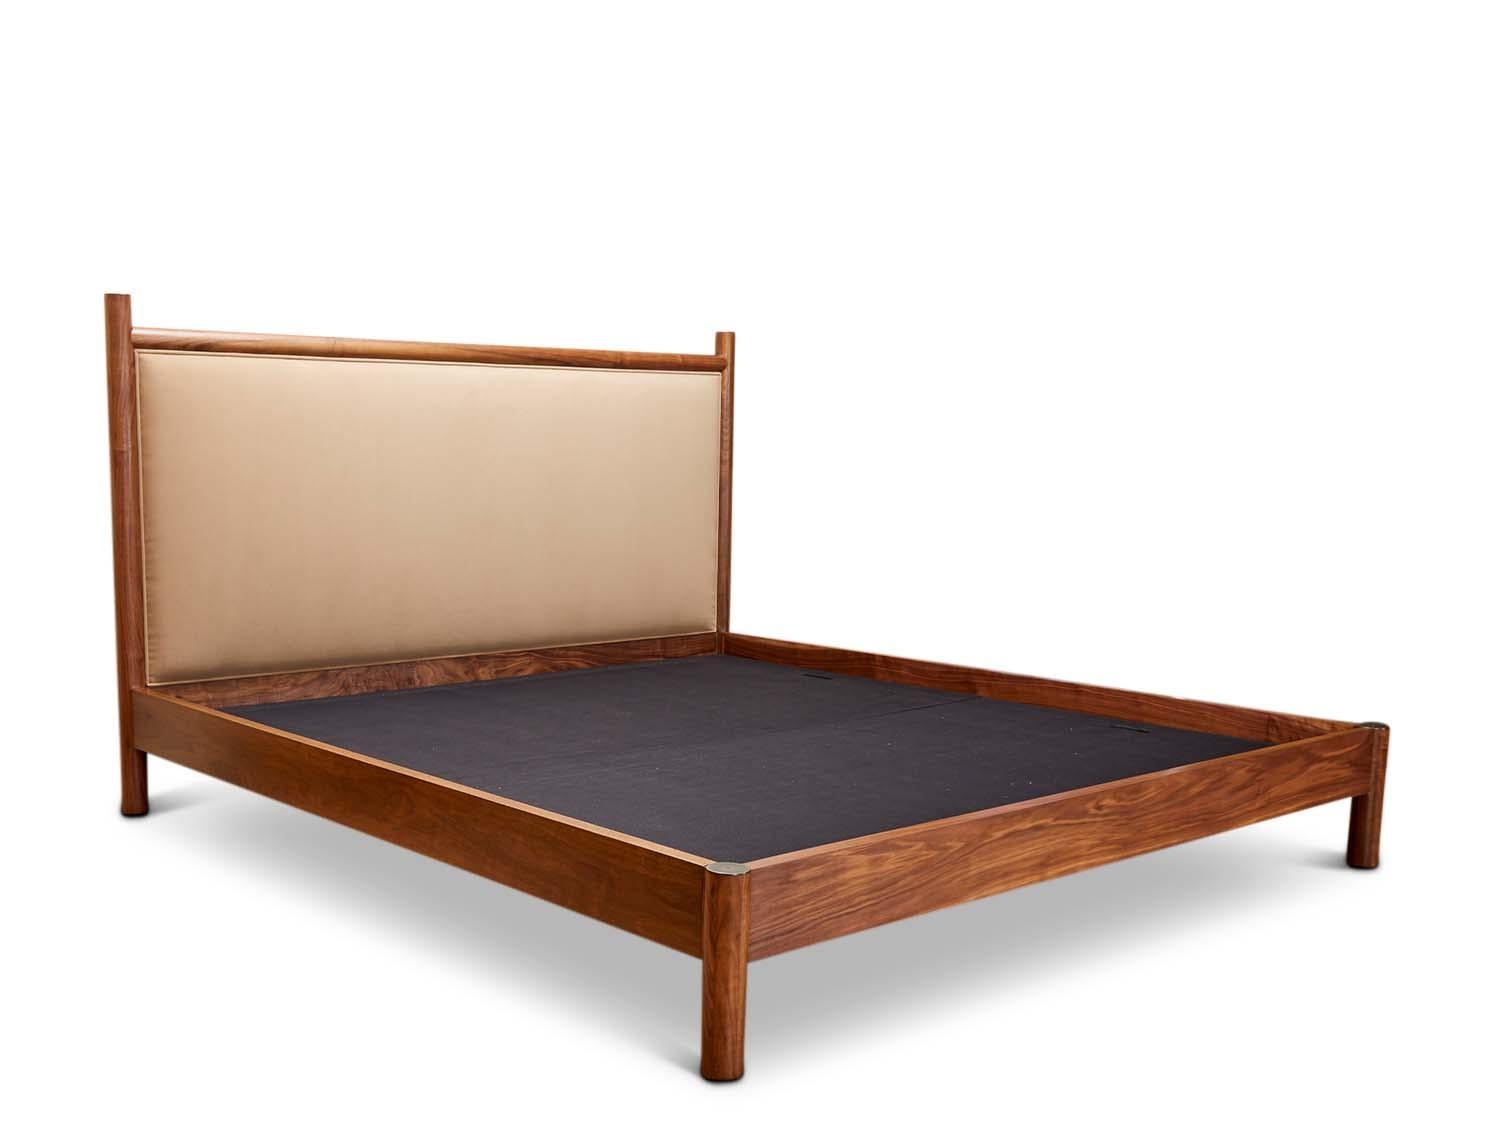 Le lit Whiting est un lit rembourré avec un cadre en noyer américain ou en chêne blanc massif, fini avec des capuchons en laiton. Les lattes sont fournies. Disponible avec ou sans pied de lit. 

La collection Lawson-Fenning est conçue et fabriquée à